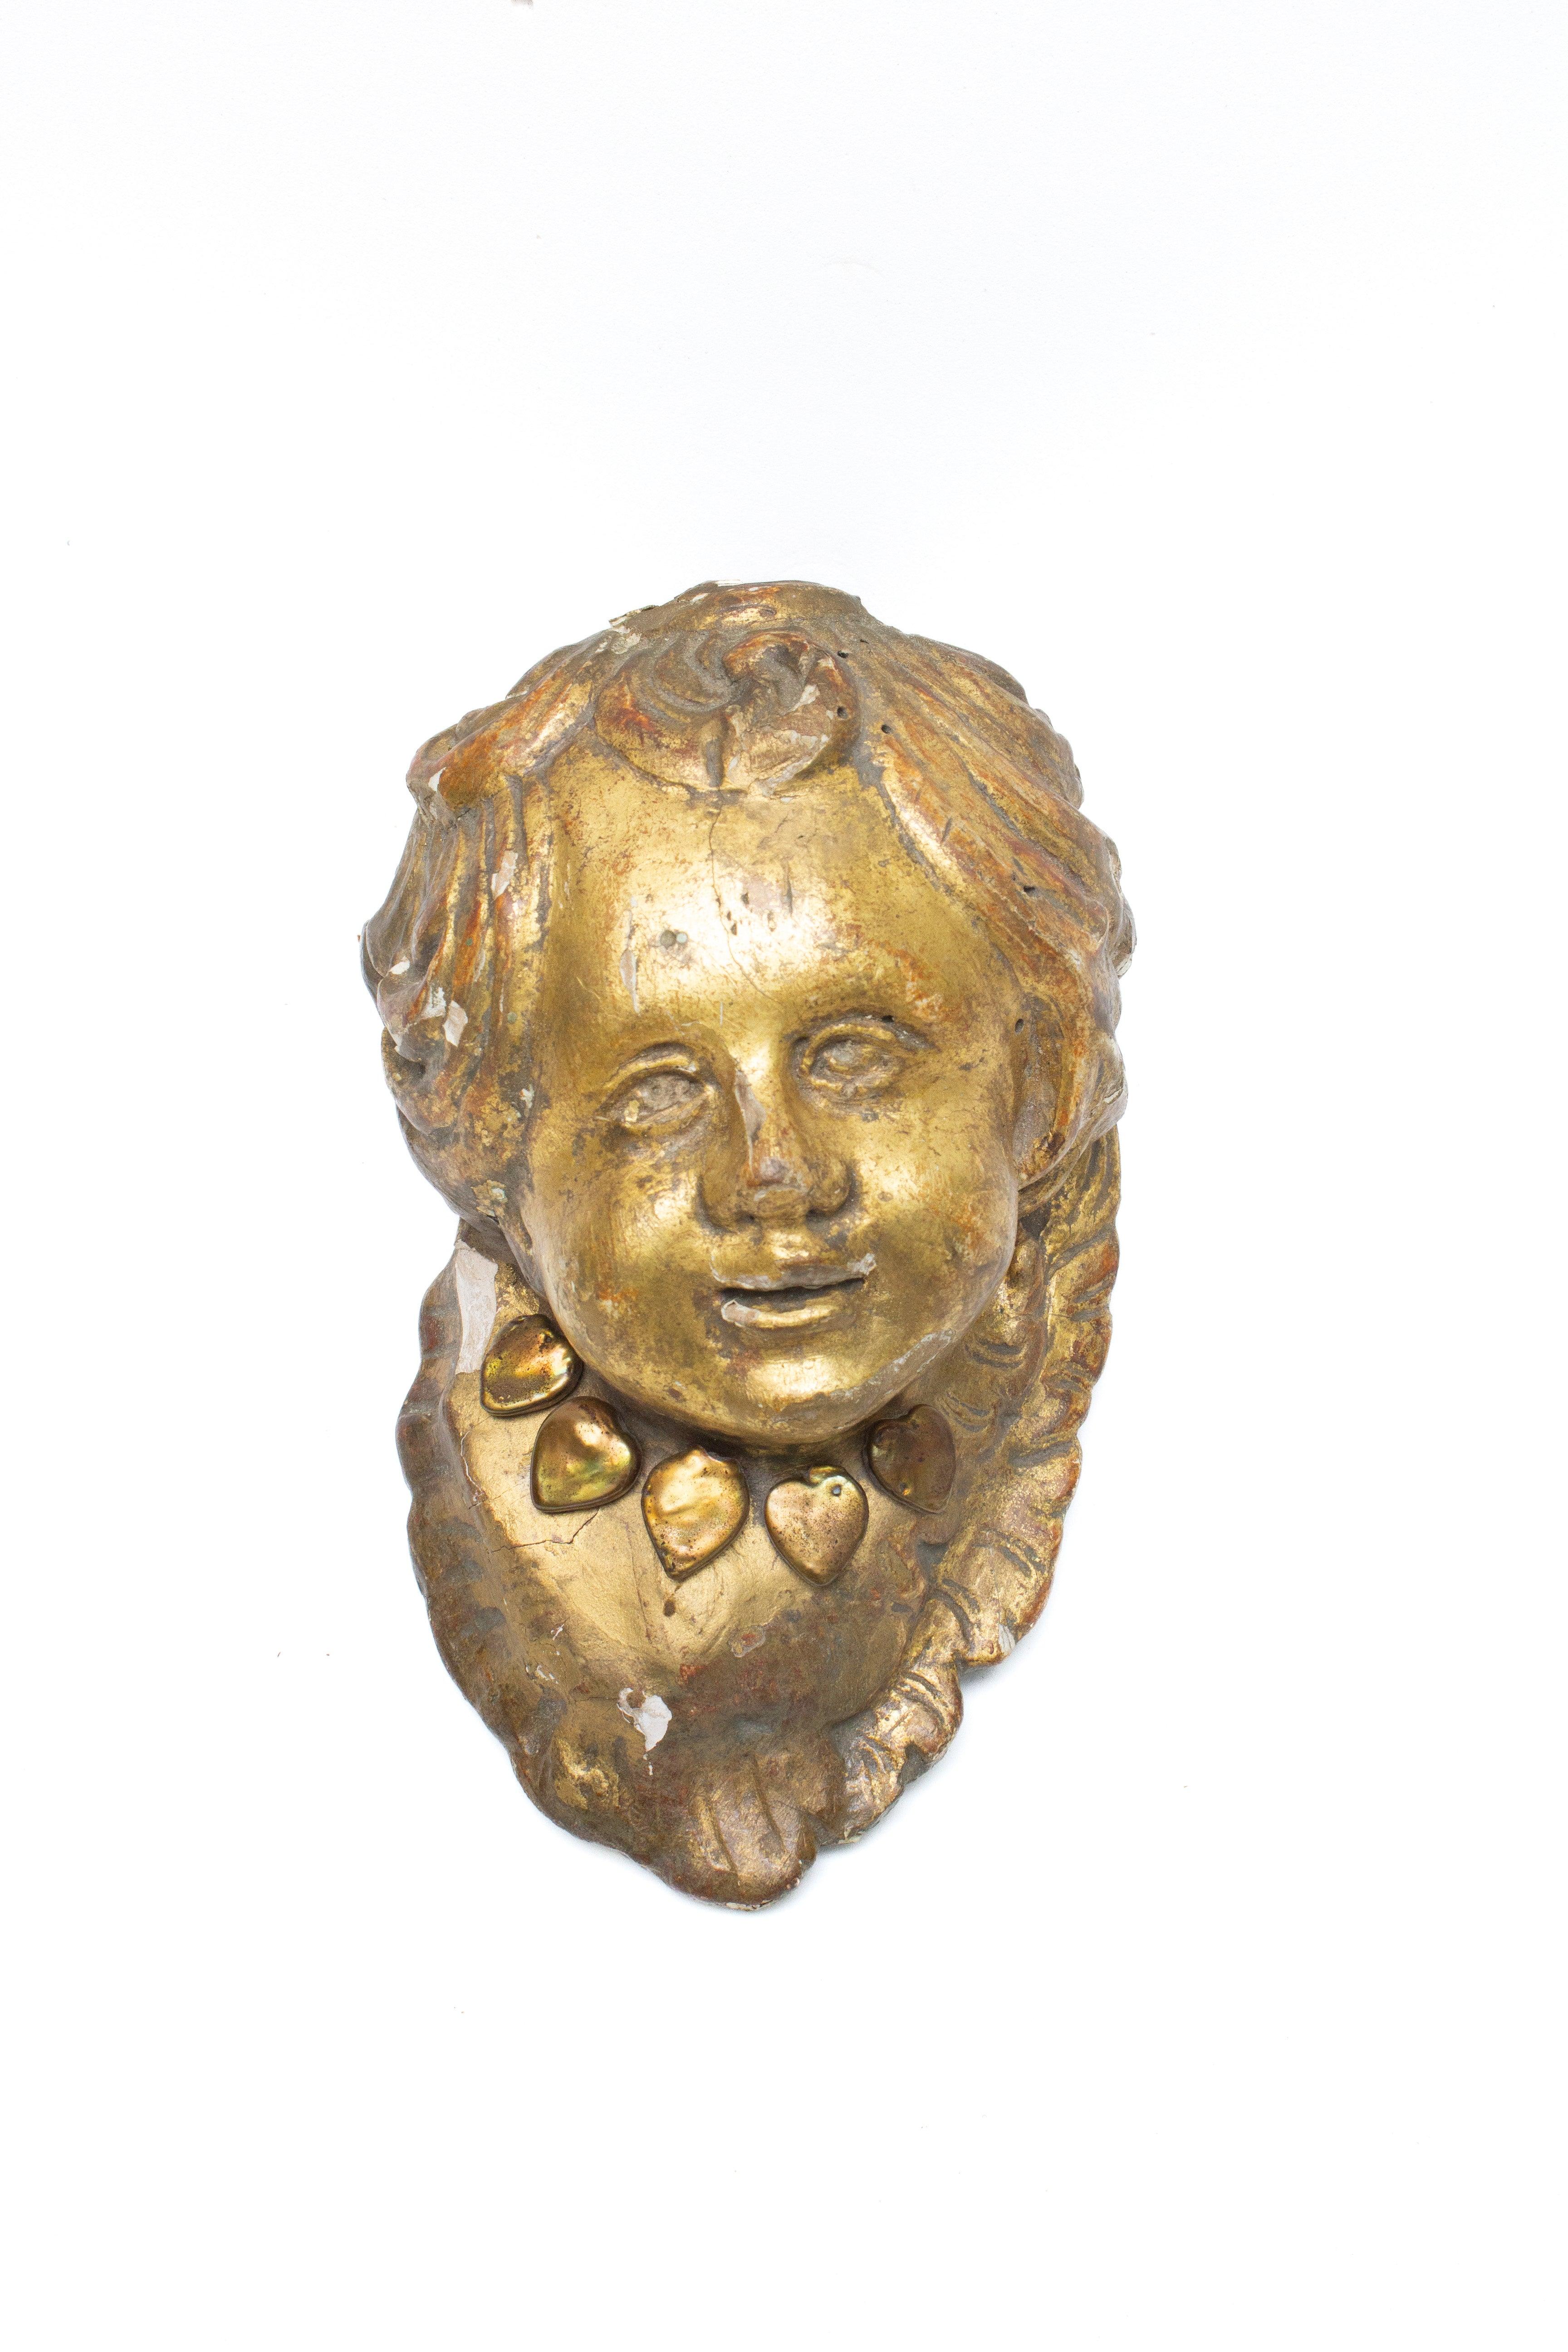 18th century Italian gold leaf angel head or 